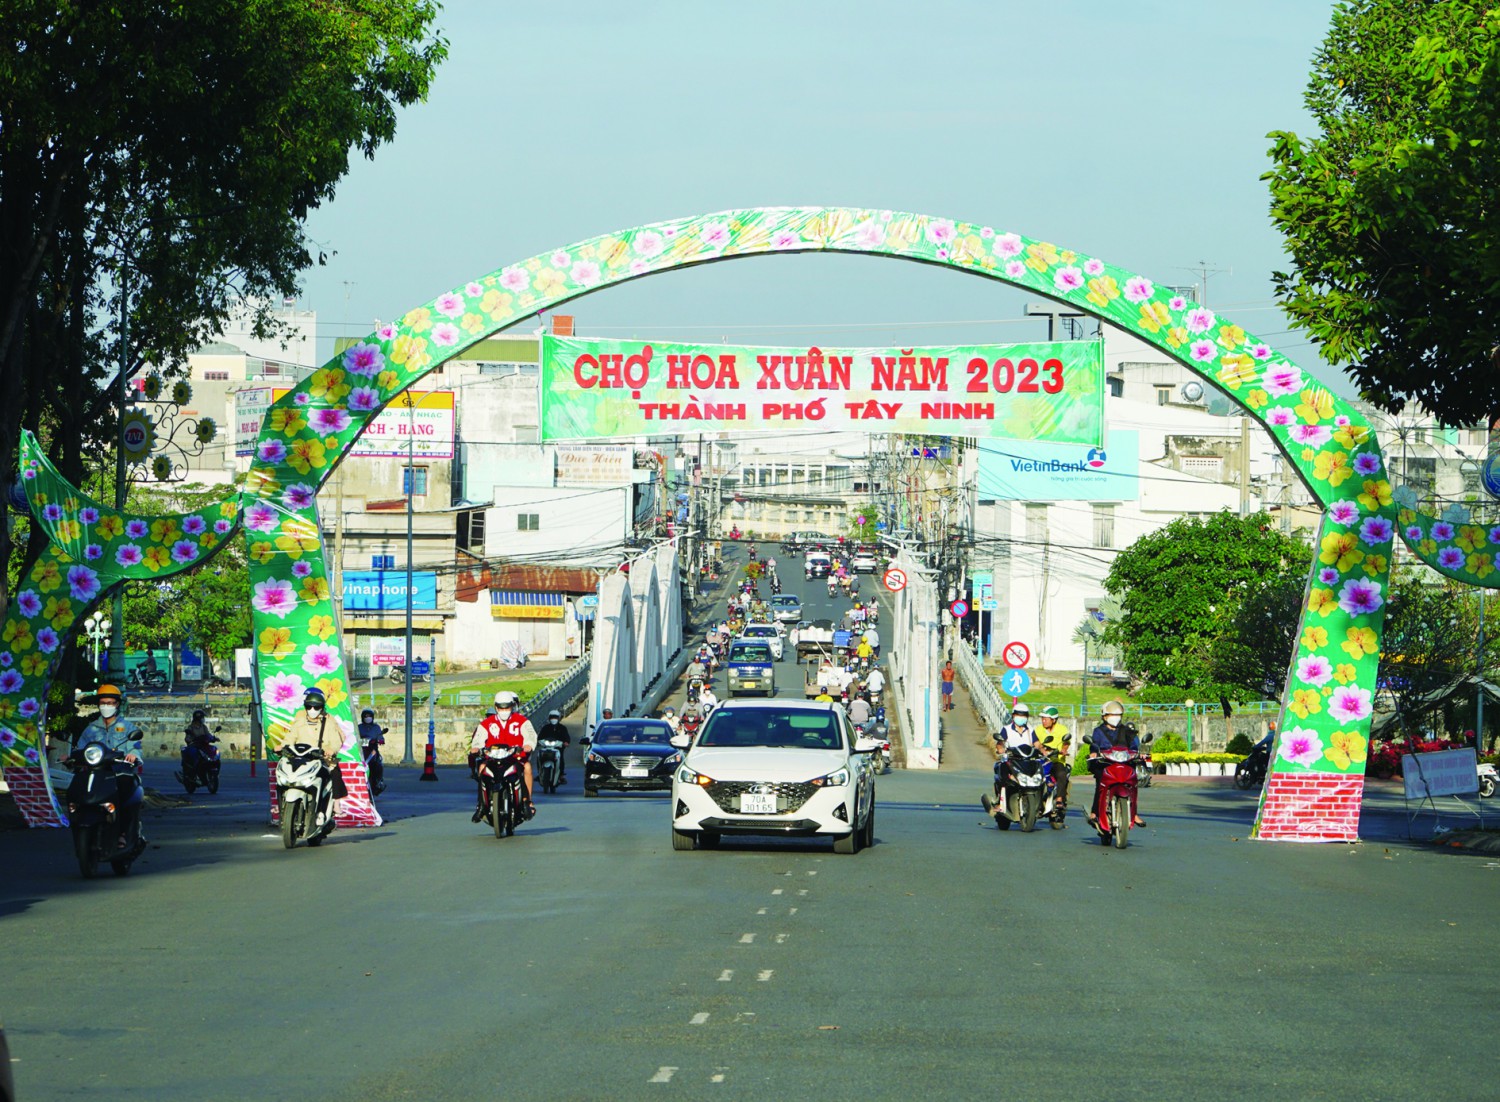 Chợ hoa xuân thành phố Tây Ninh đã nhóm